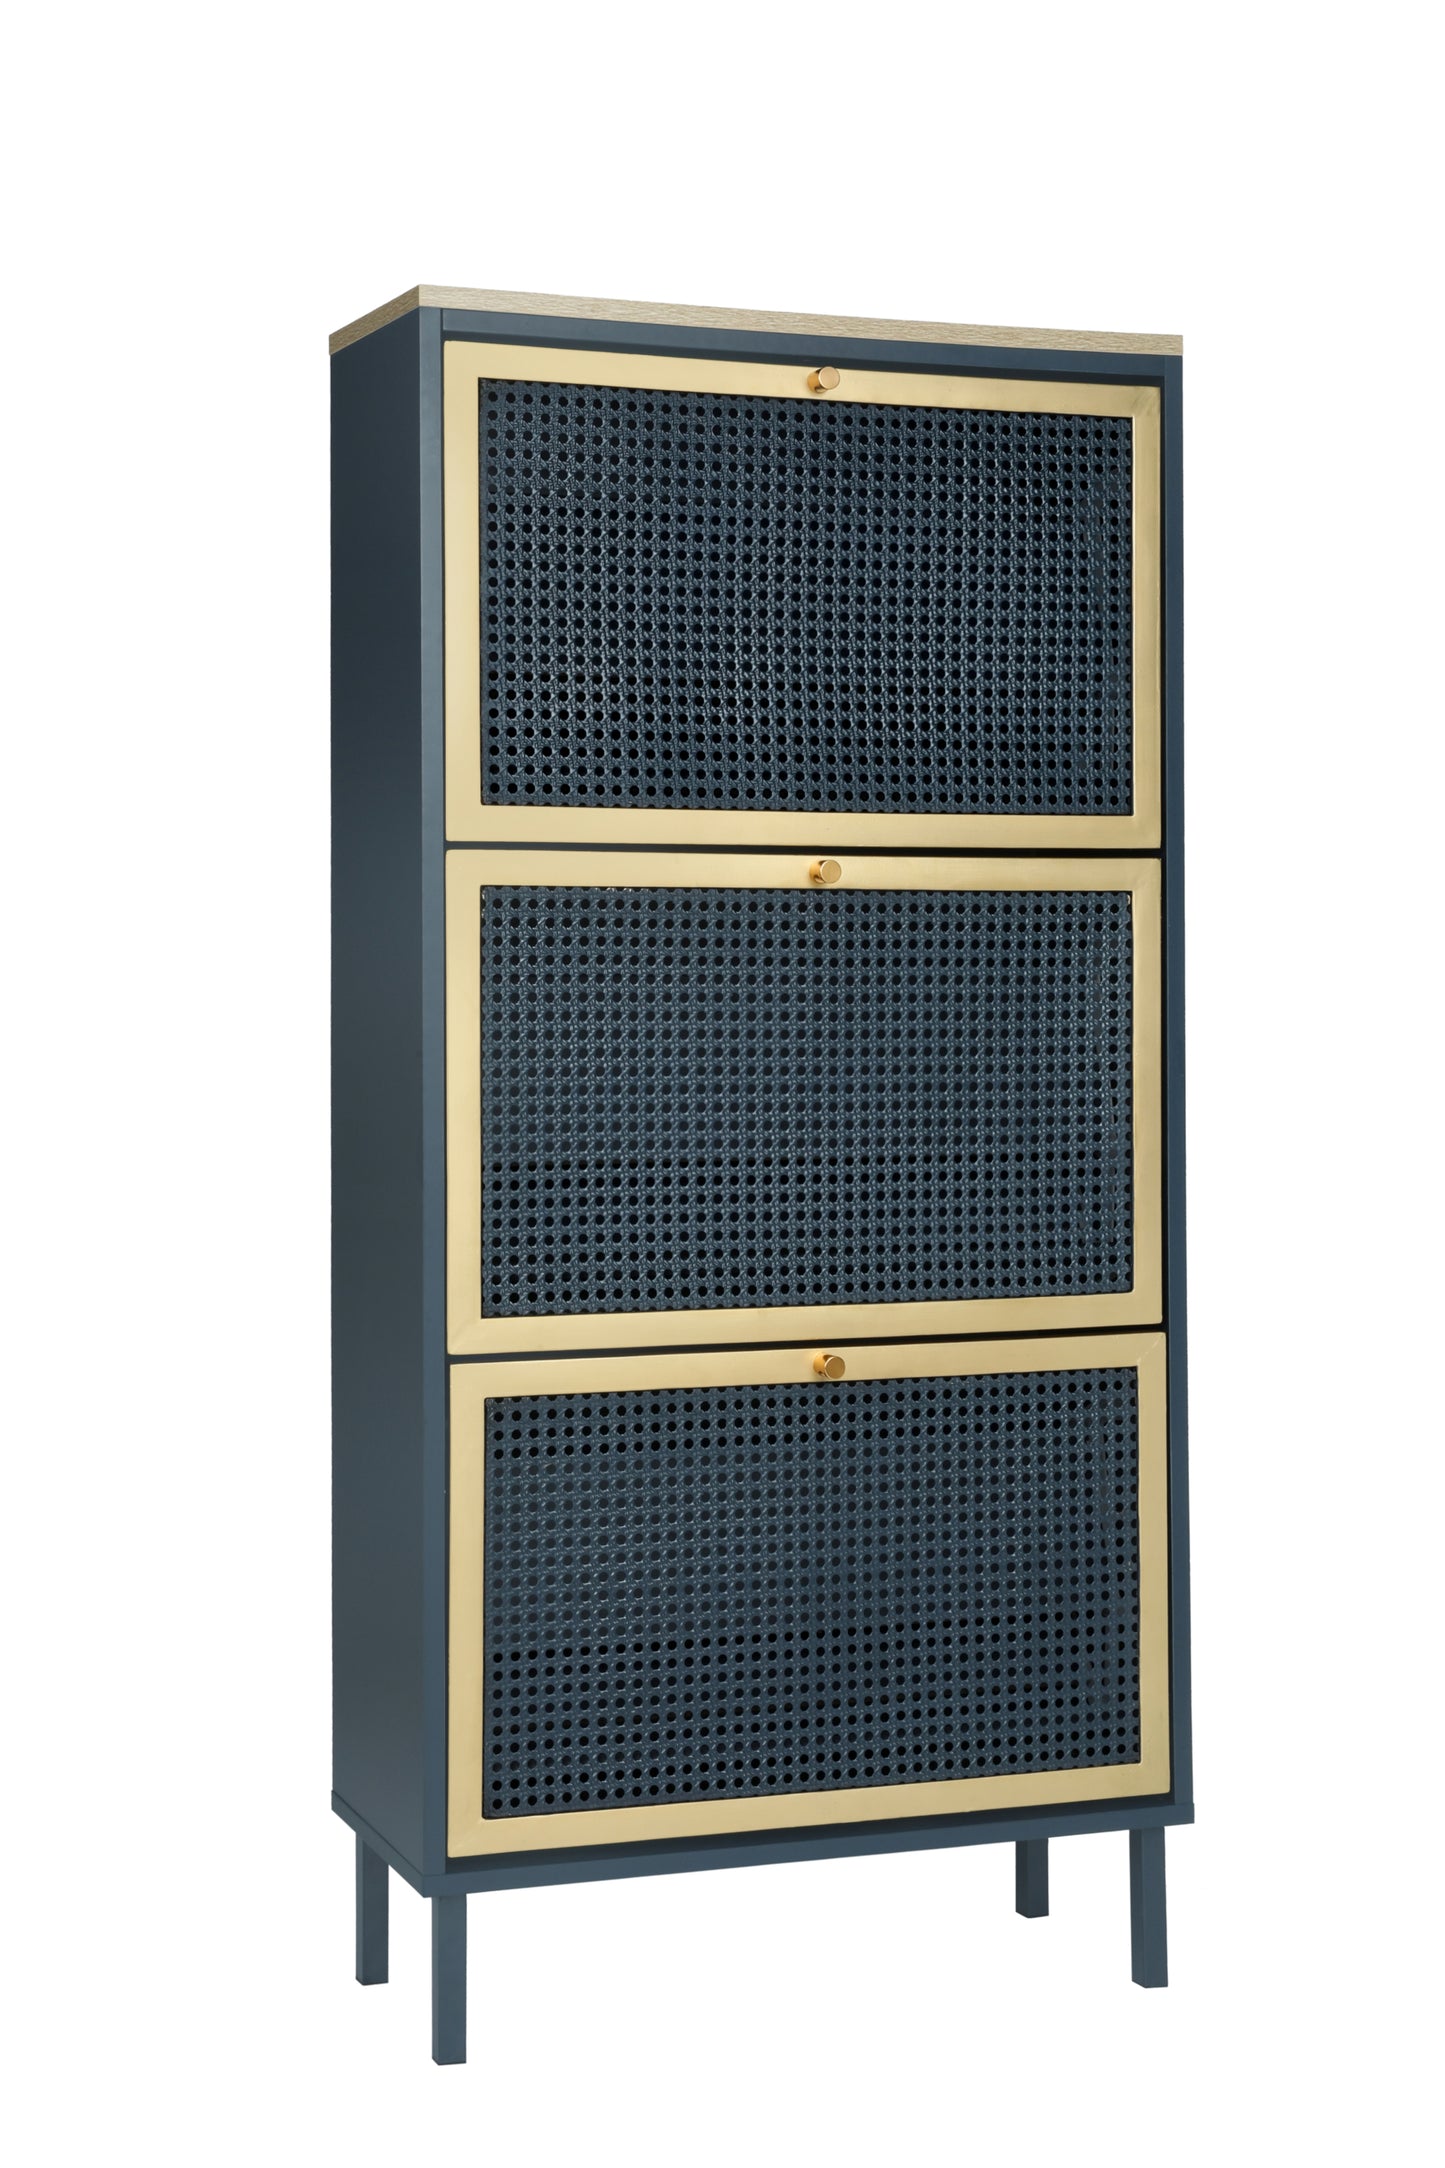 3 Metal Door Shoe Rack, Freestanding Modern Shoe Storage Cabinet, Metal rattan, for Entryway